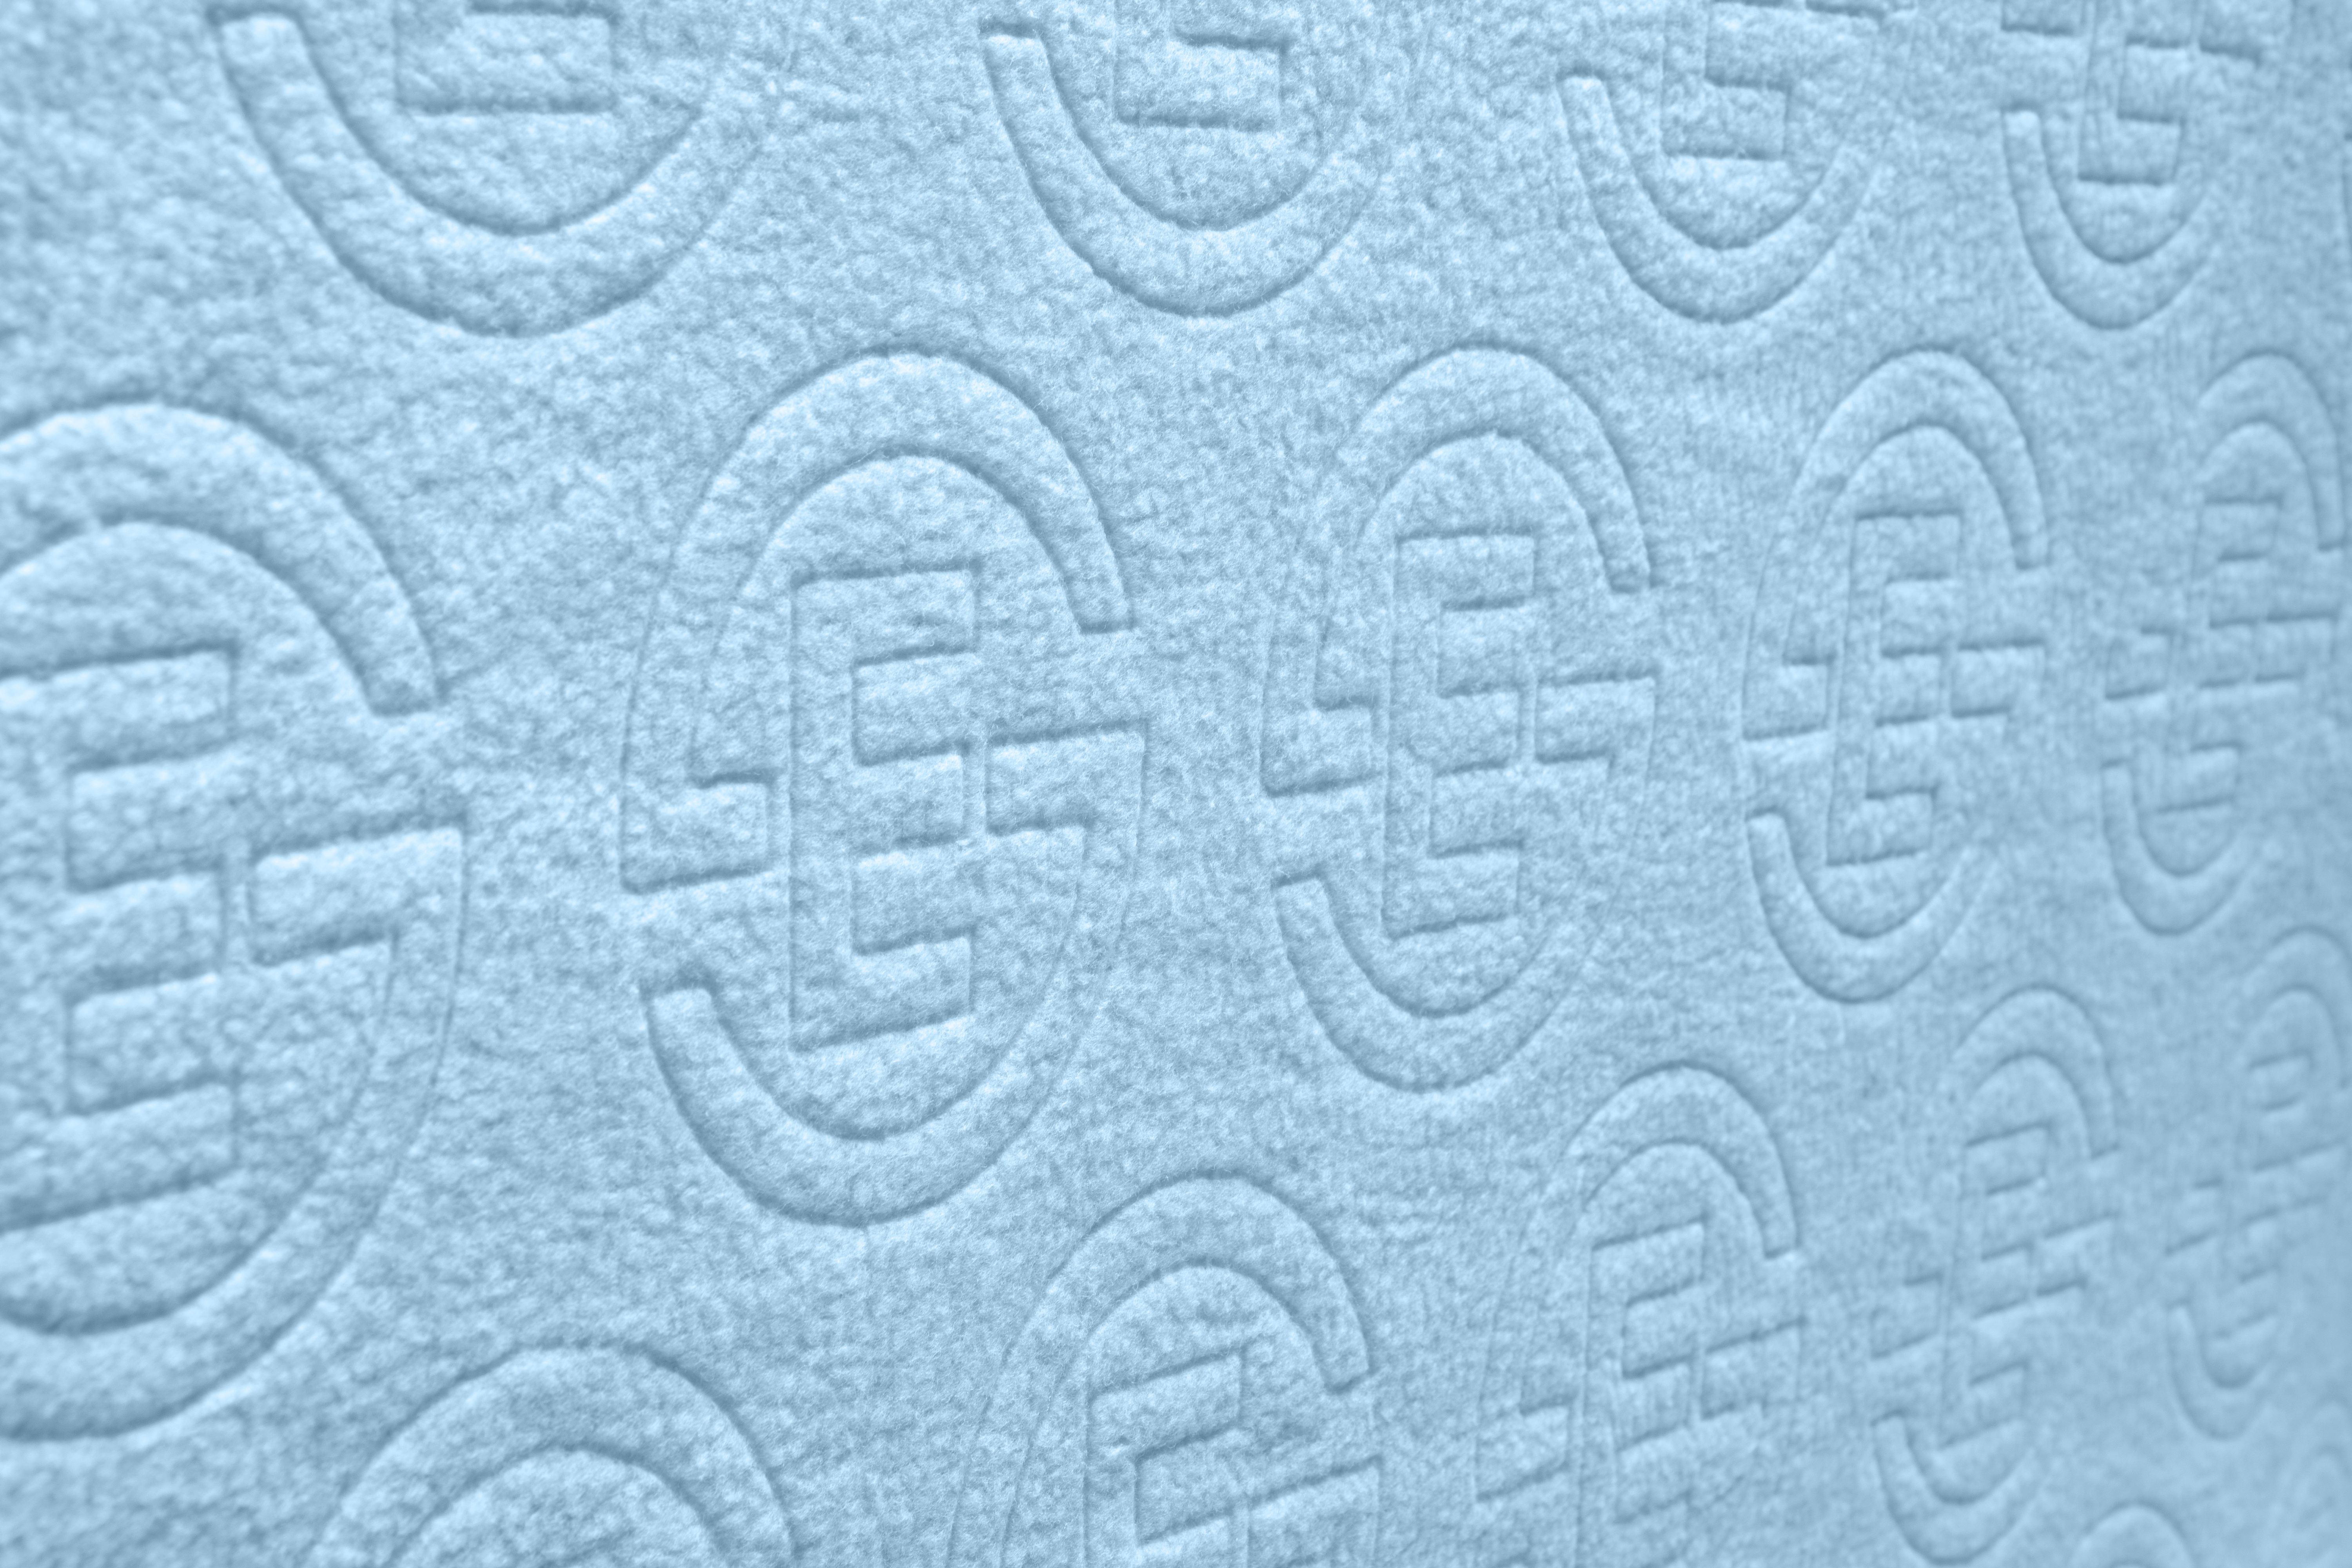 Abschwitzdecke Fleece Stamp Reflexx in silkblue